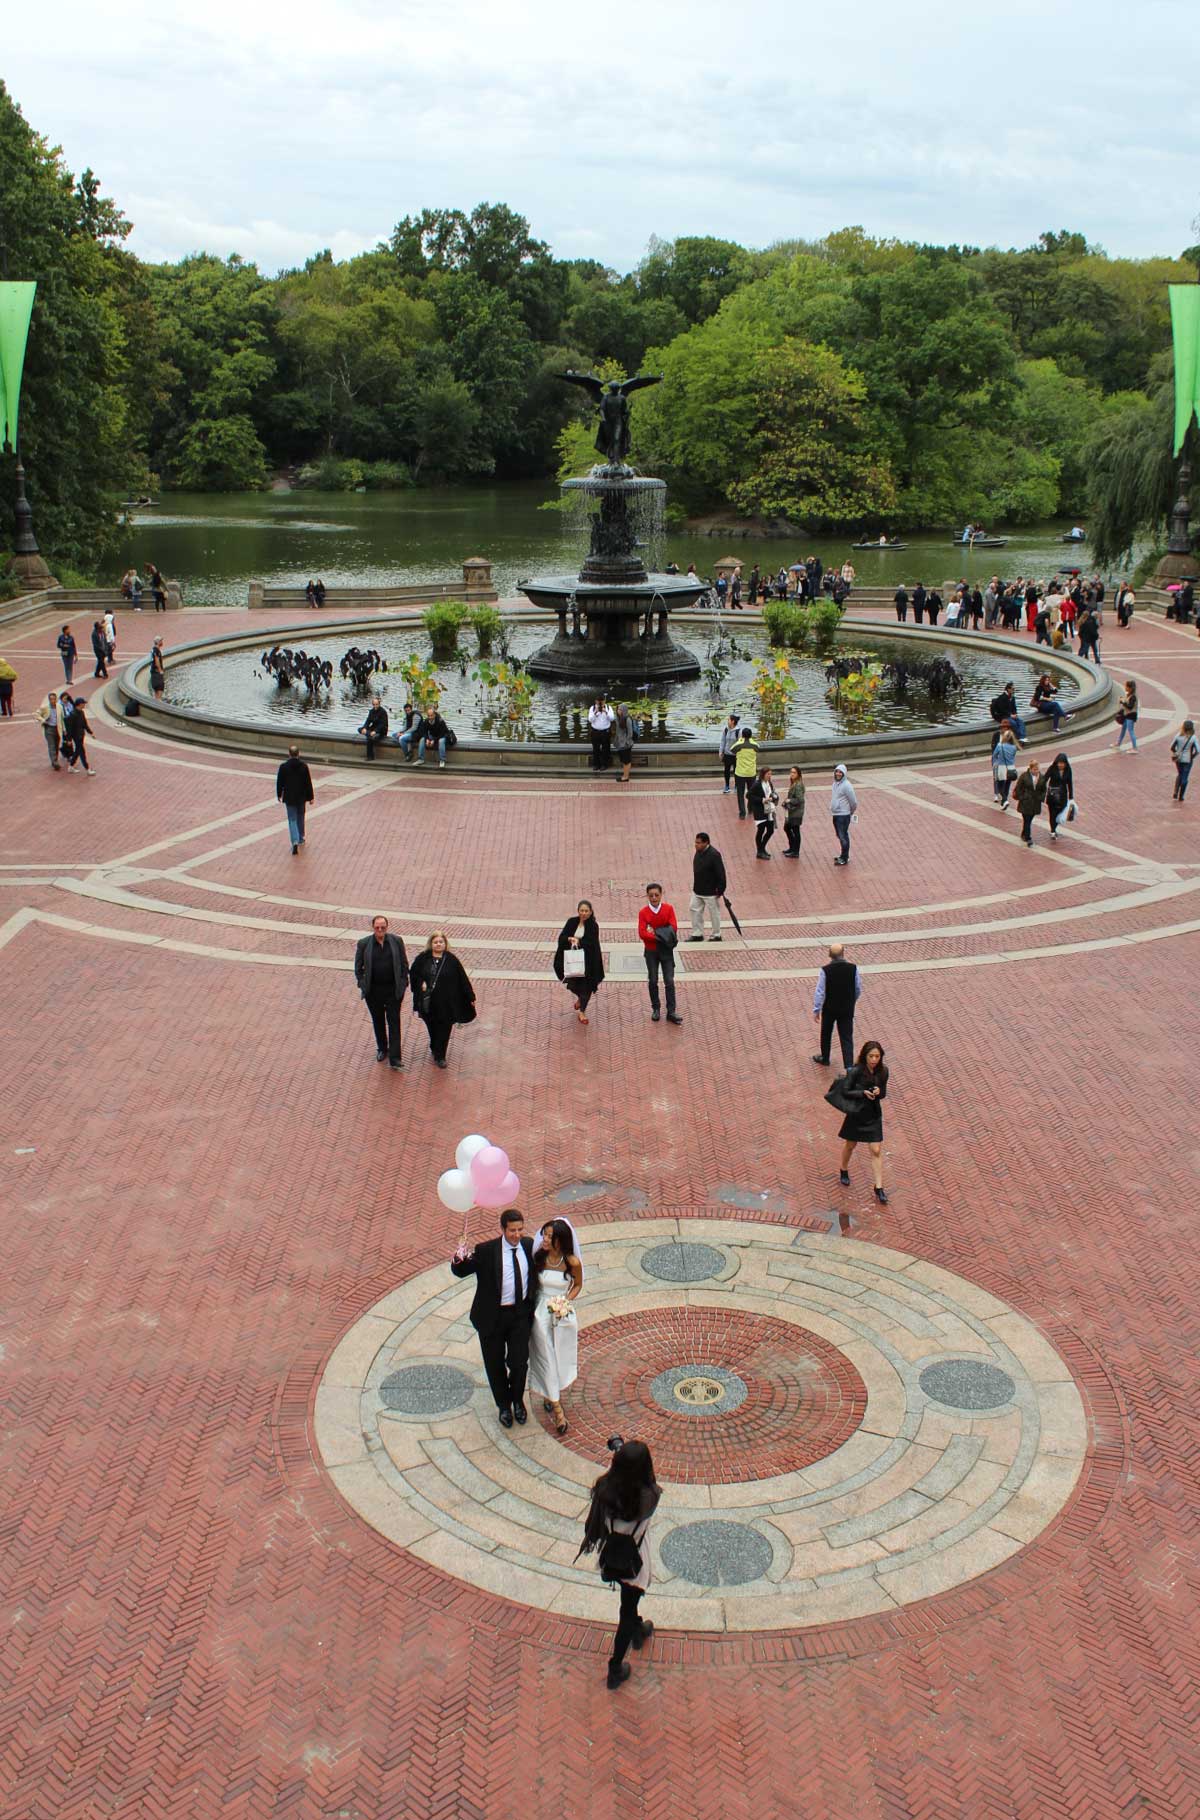 Casal de noivos tira fotos na Bethesda Fountain, no Central Park